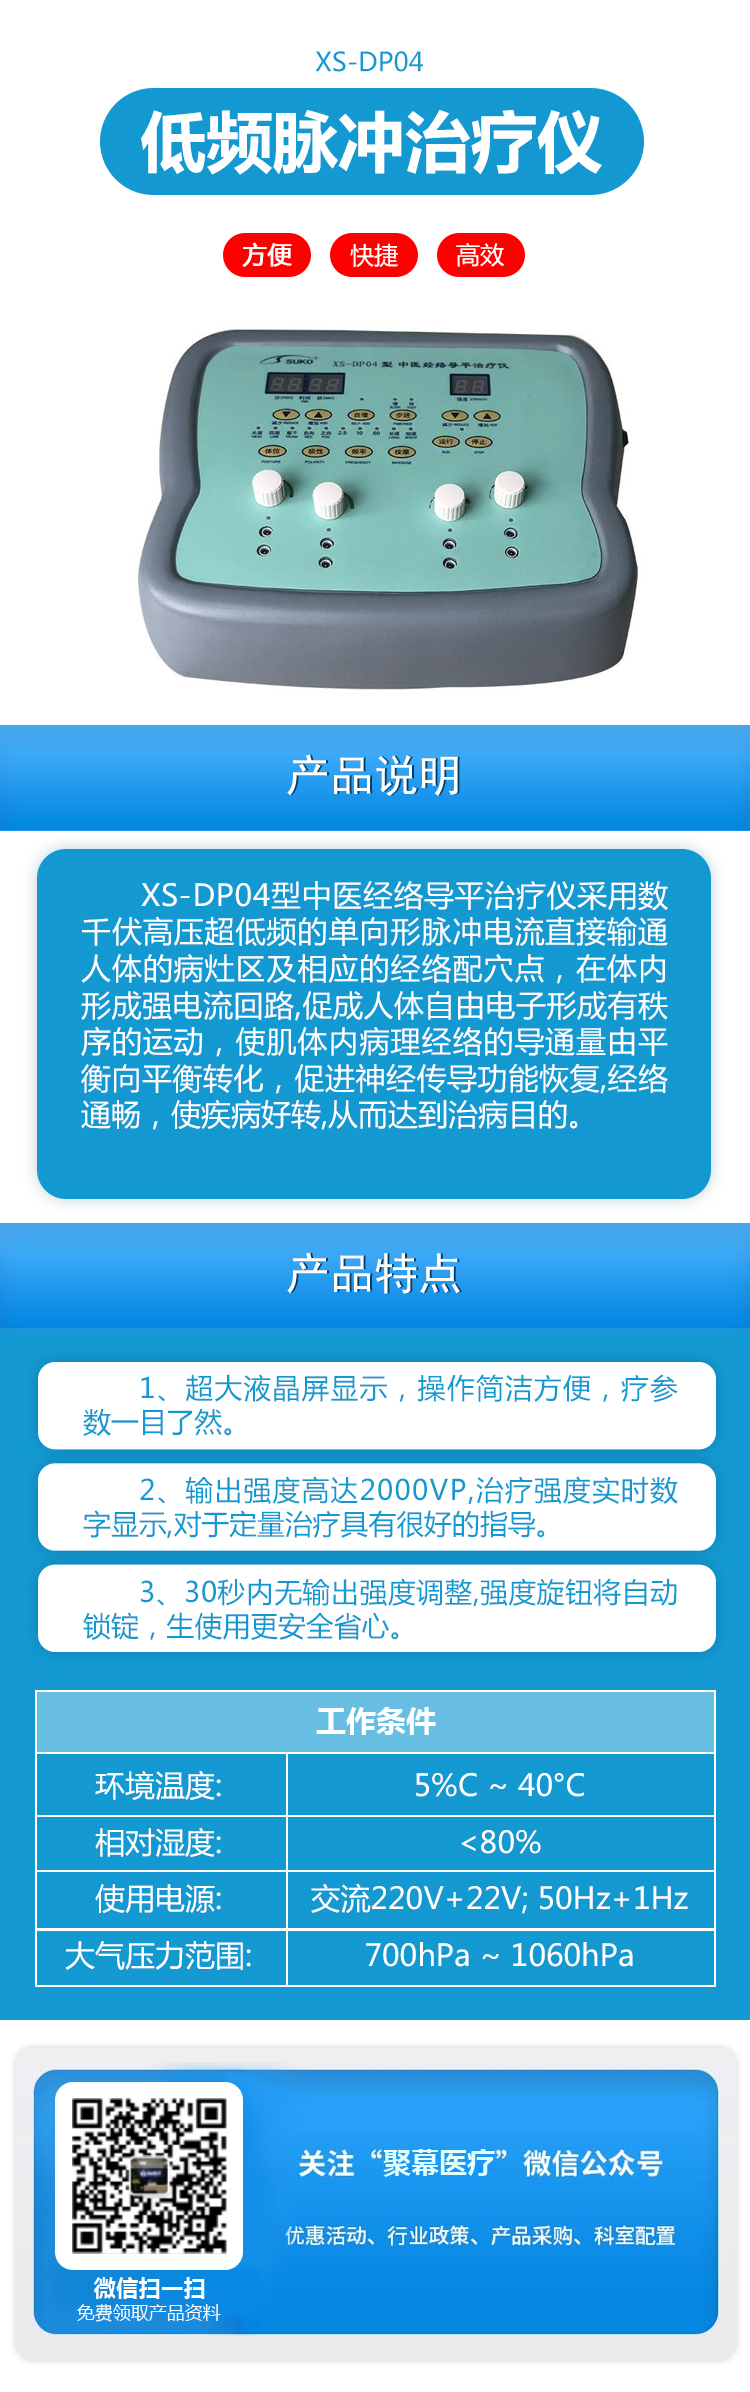 中医经络导平治疗仪XS-DP04型低频脉冲治疗仪.jpg